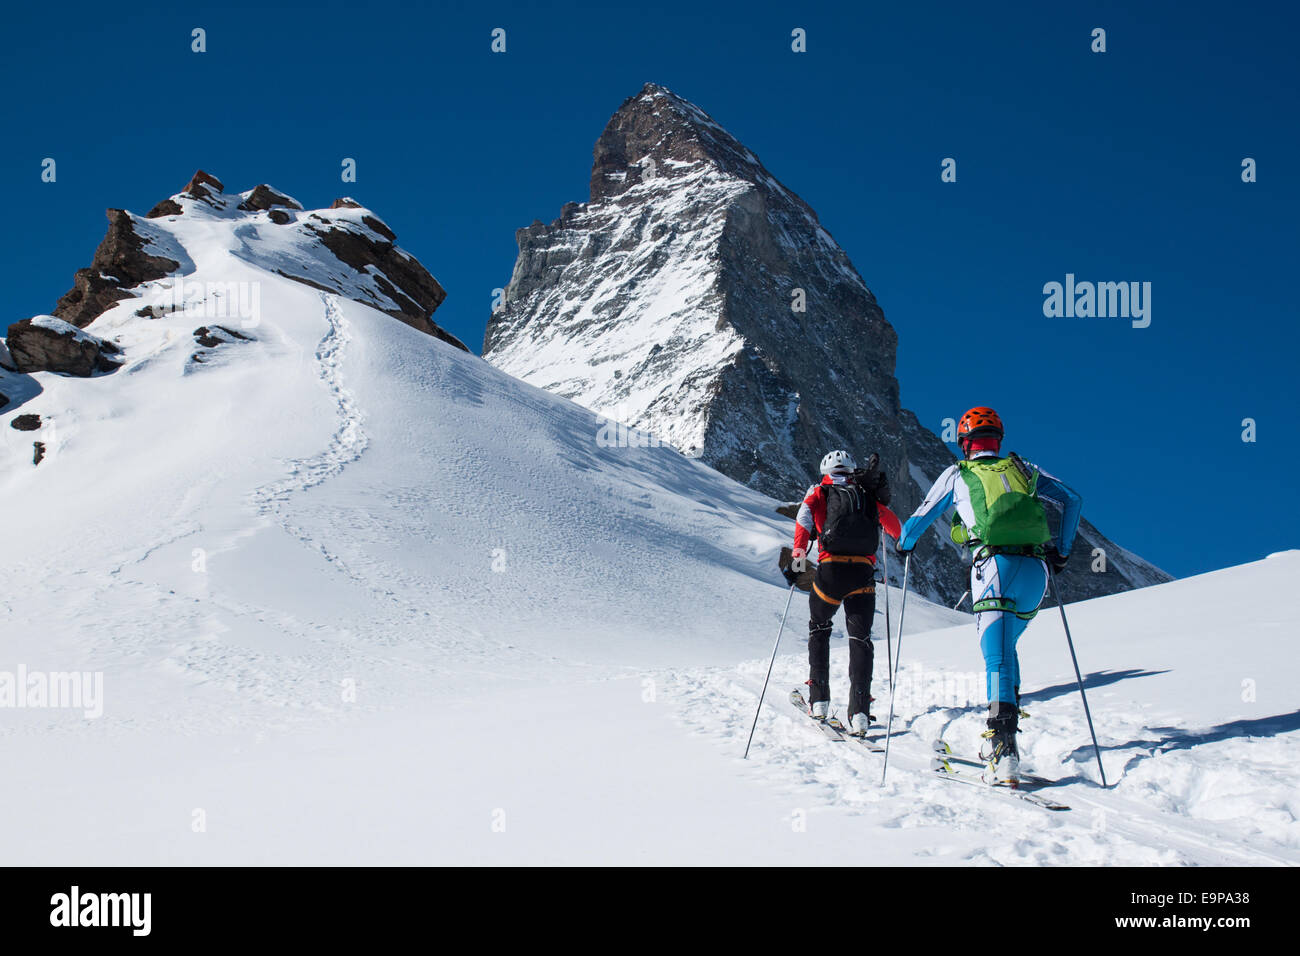 Matterhorn, ski mountaineering Stock Photo